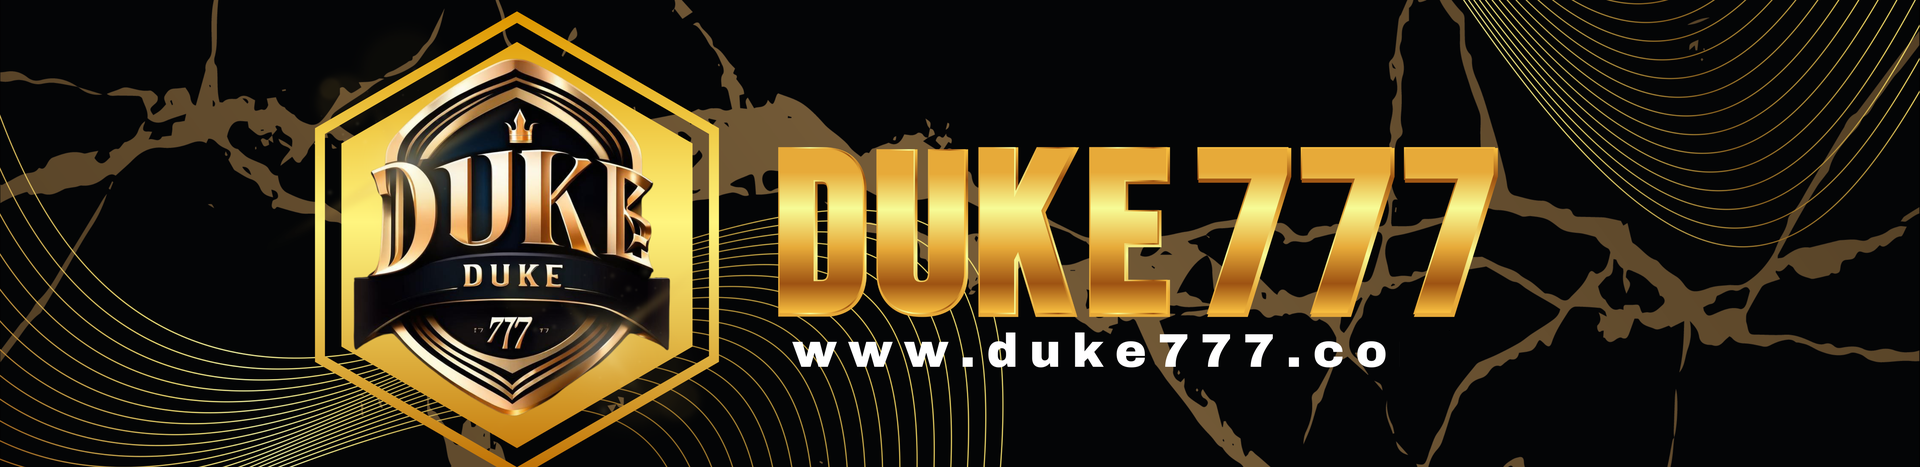 Duke 777 Banner